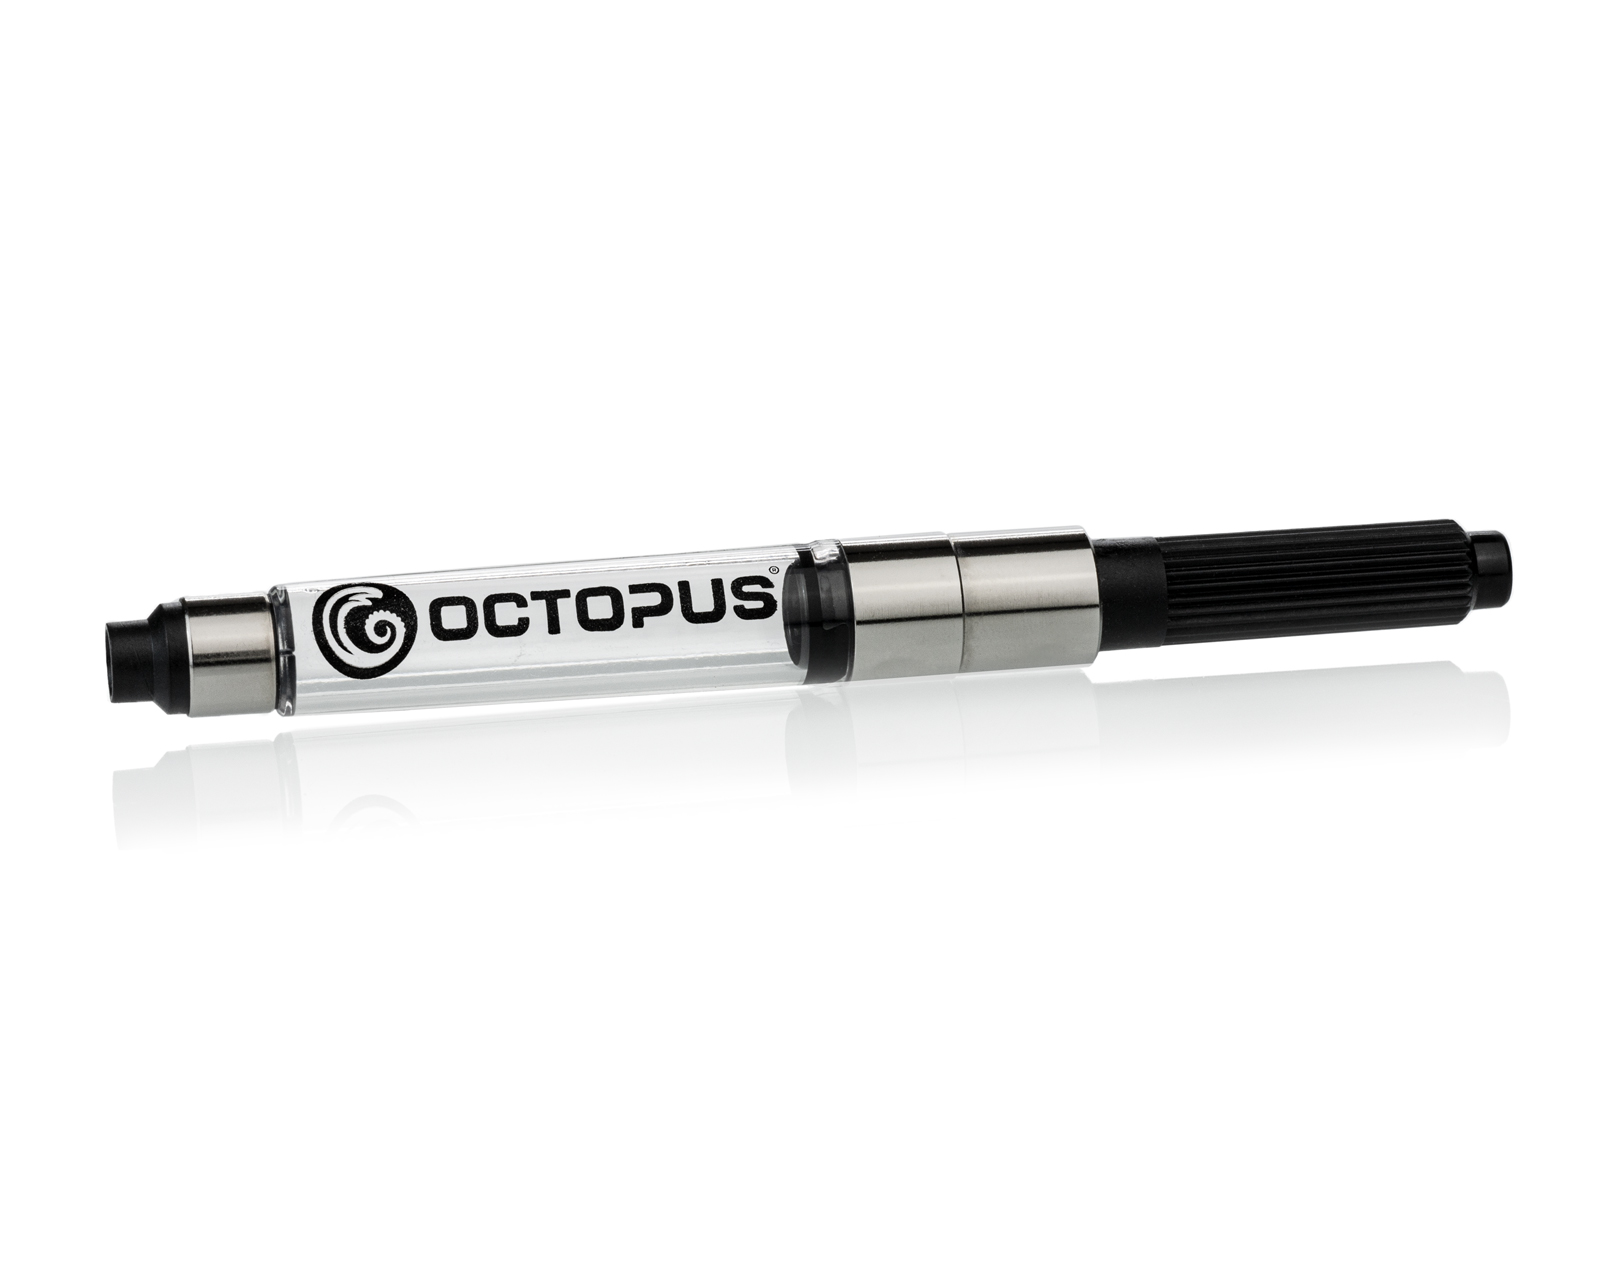 Octopus Fluids Convertitore a pistone per penna stilografica, convertitore standard con apertura di 2,6 mm